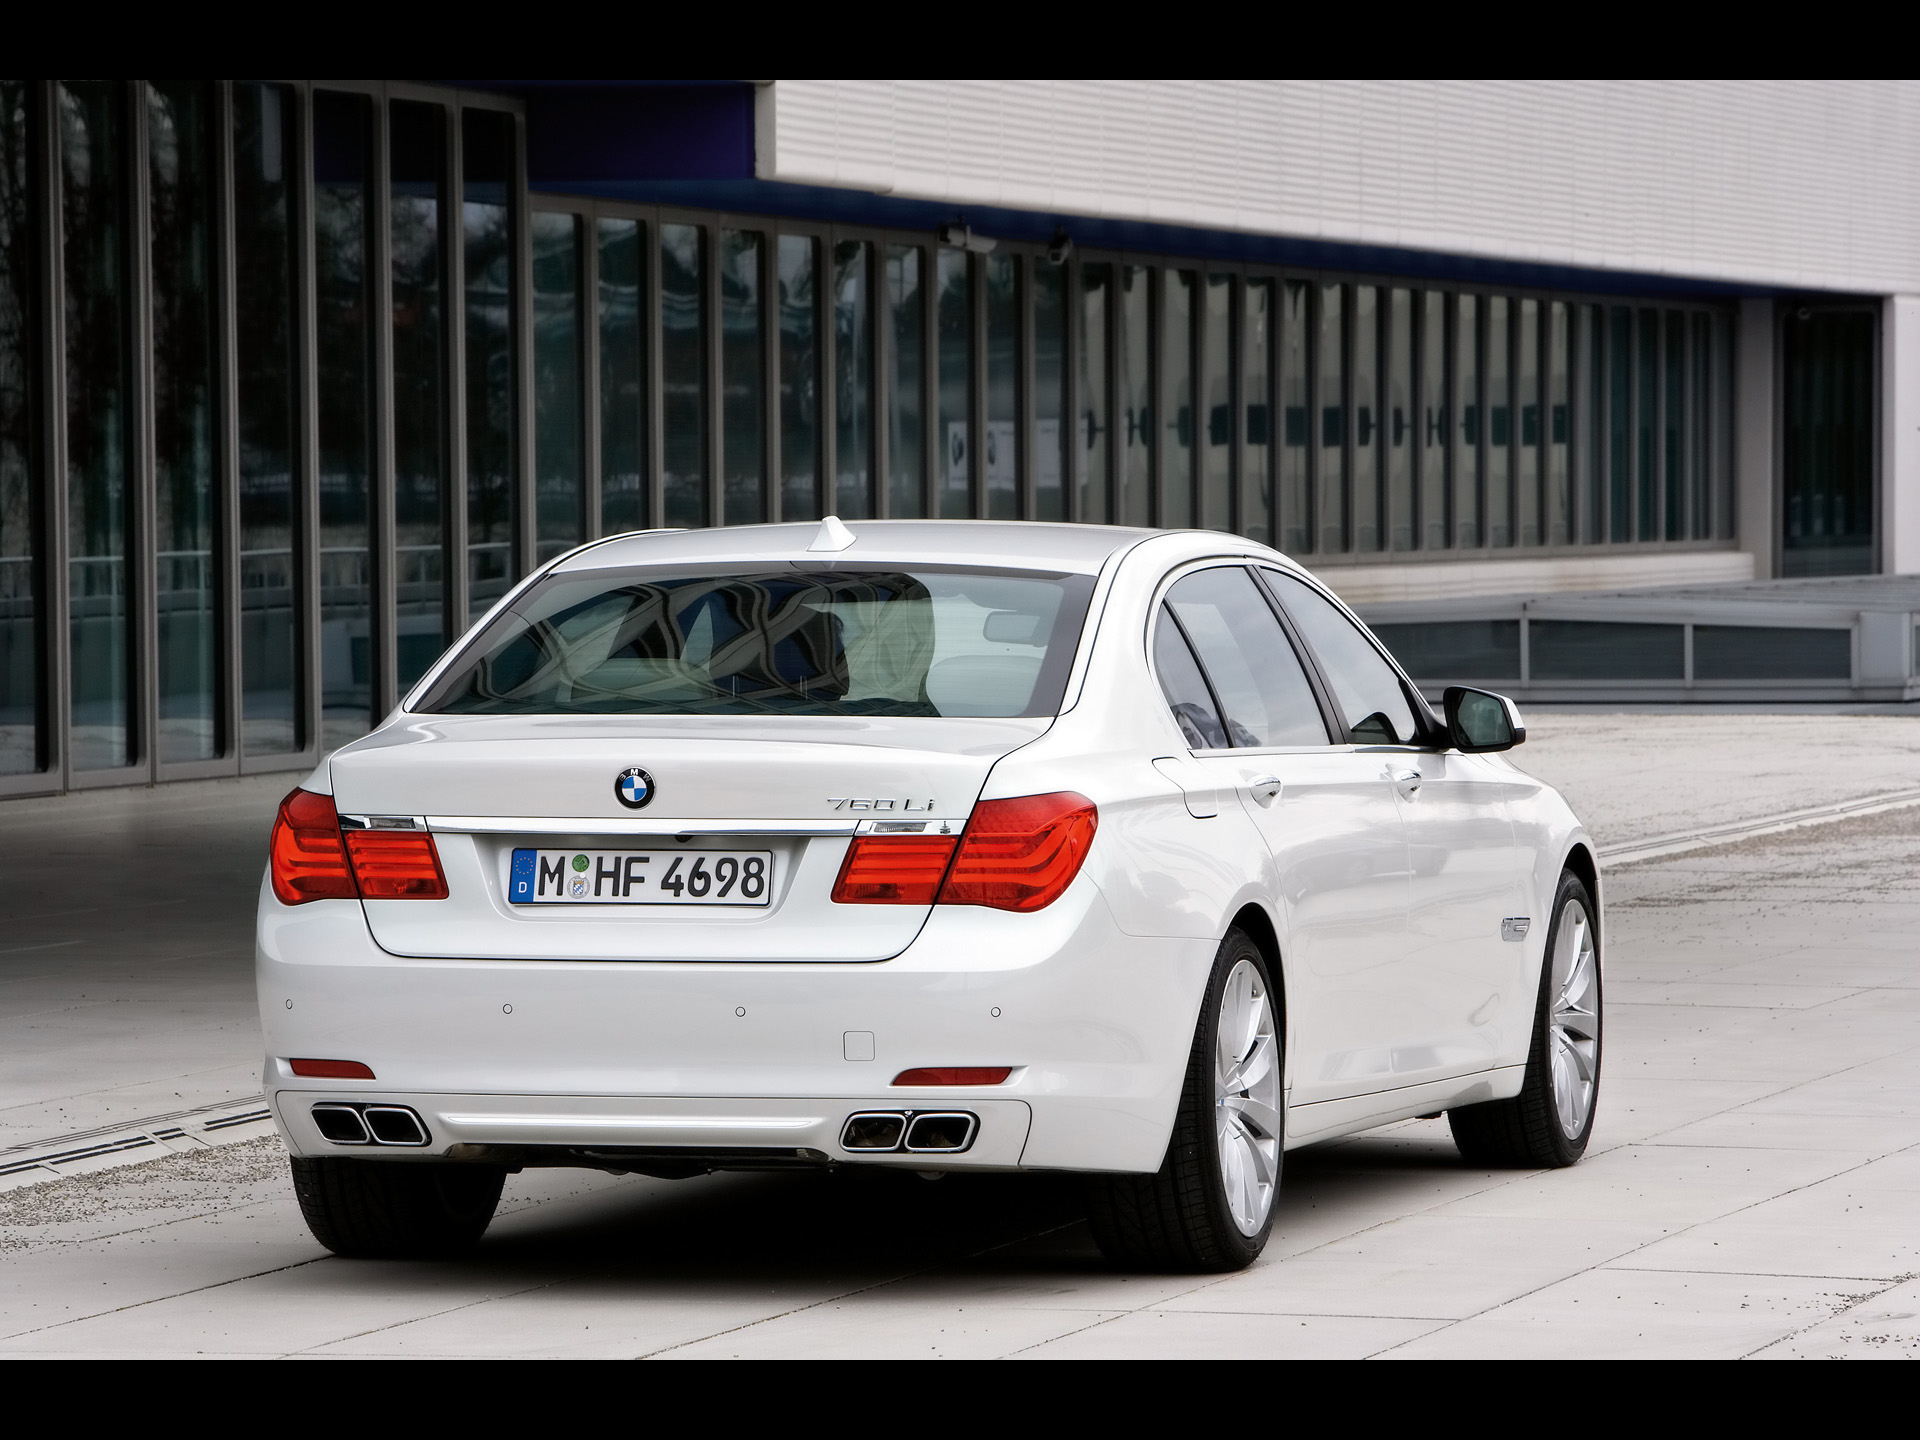 2009-BMW-760i-and-760Li-Rear-Angle-1920x1440.jpg